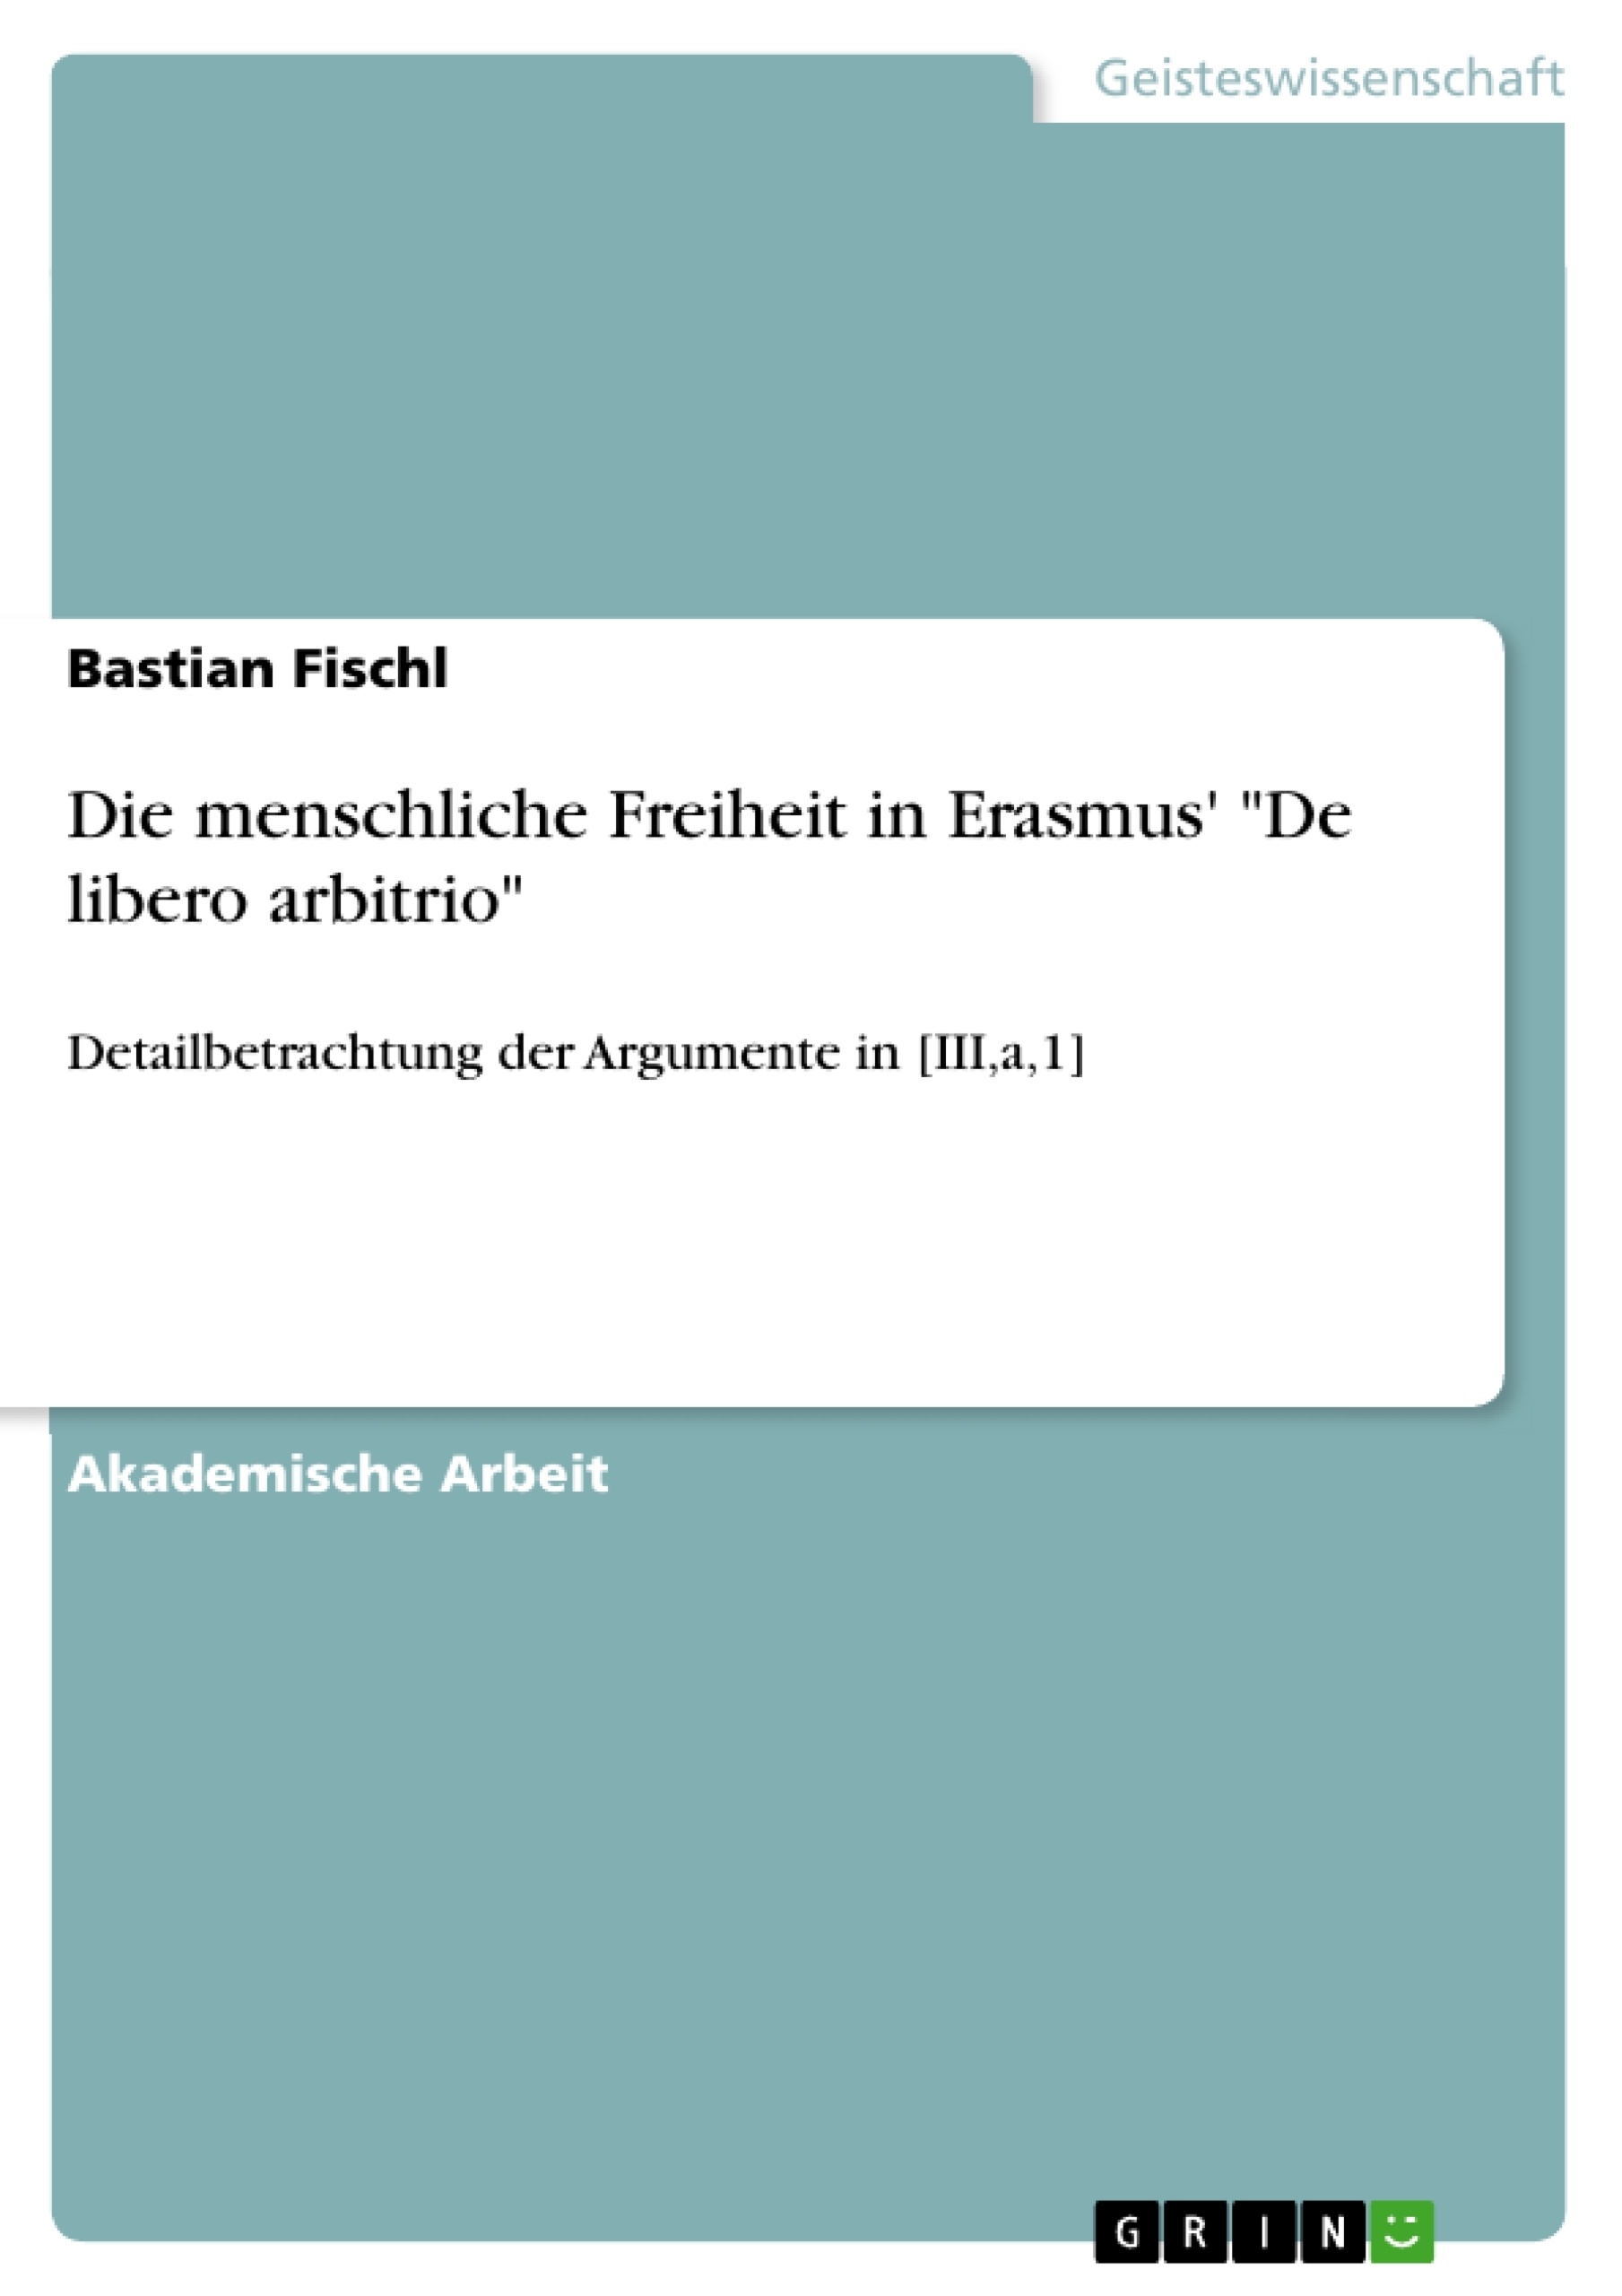 Titre: Die menschliche Freiheit in Erasmus' "De libero arbitrio"